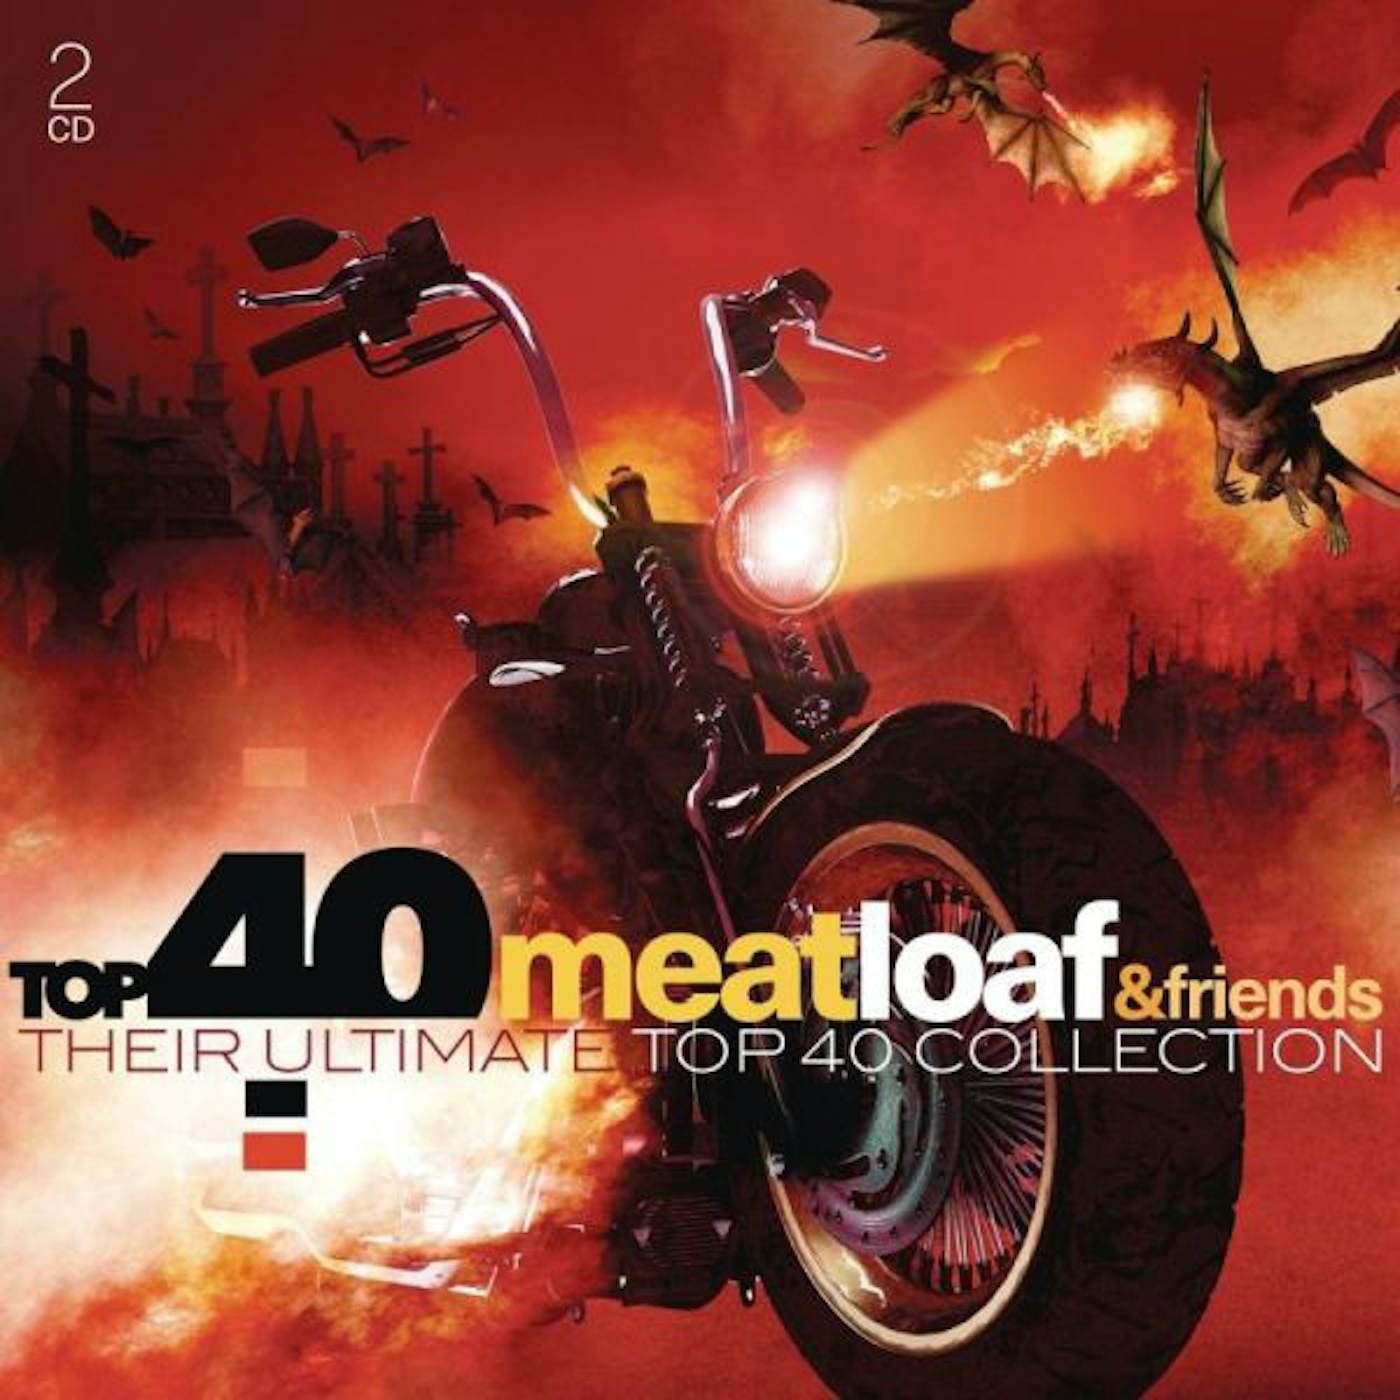 Meat Loaf TOP 40 CD